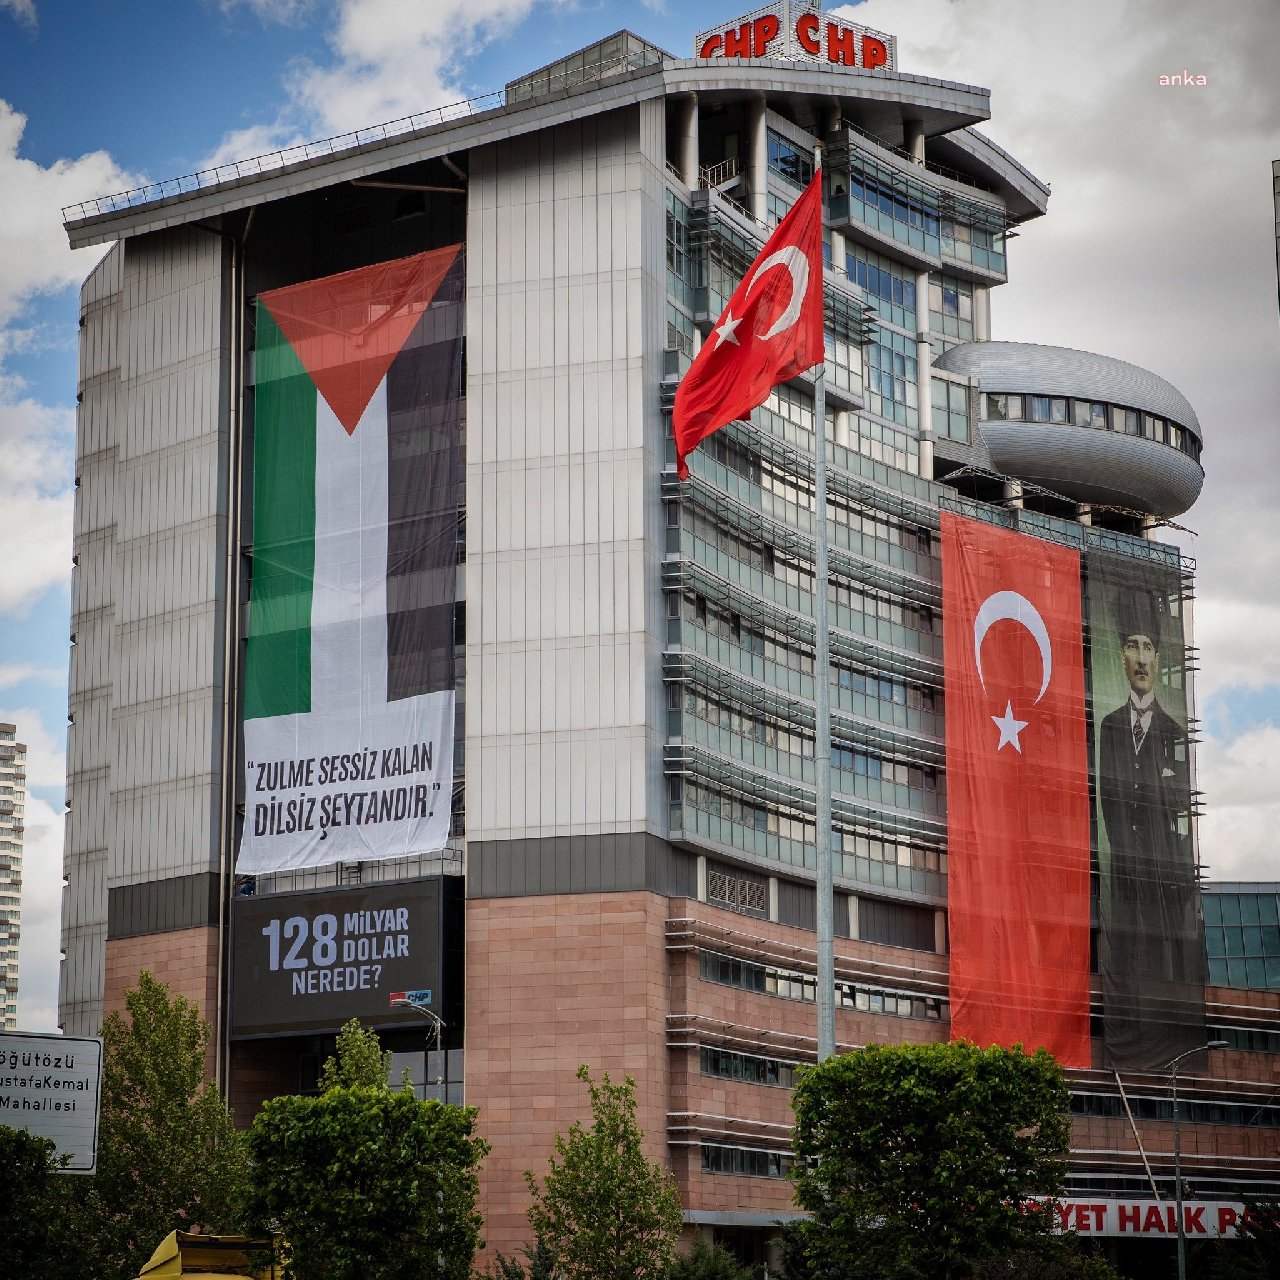 CHP Genel Merkezi'ne Filistin bayrağı asıldı: "Zulme sessiz kalan dilsiz şeytandır"